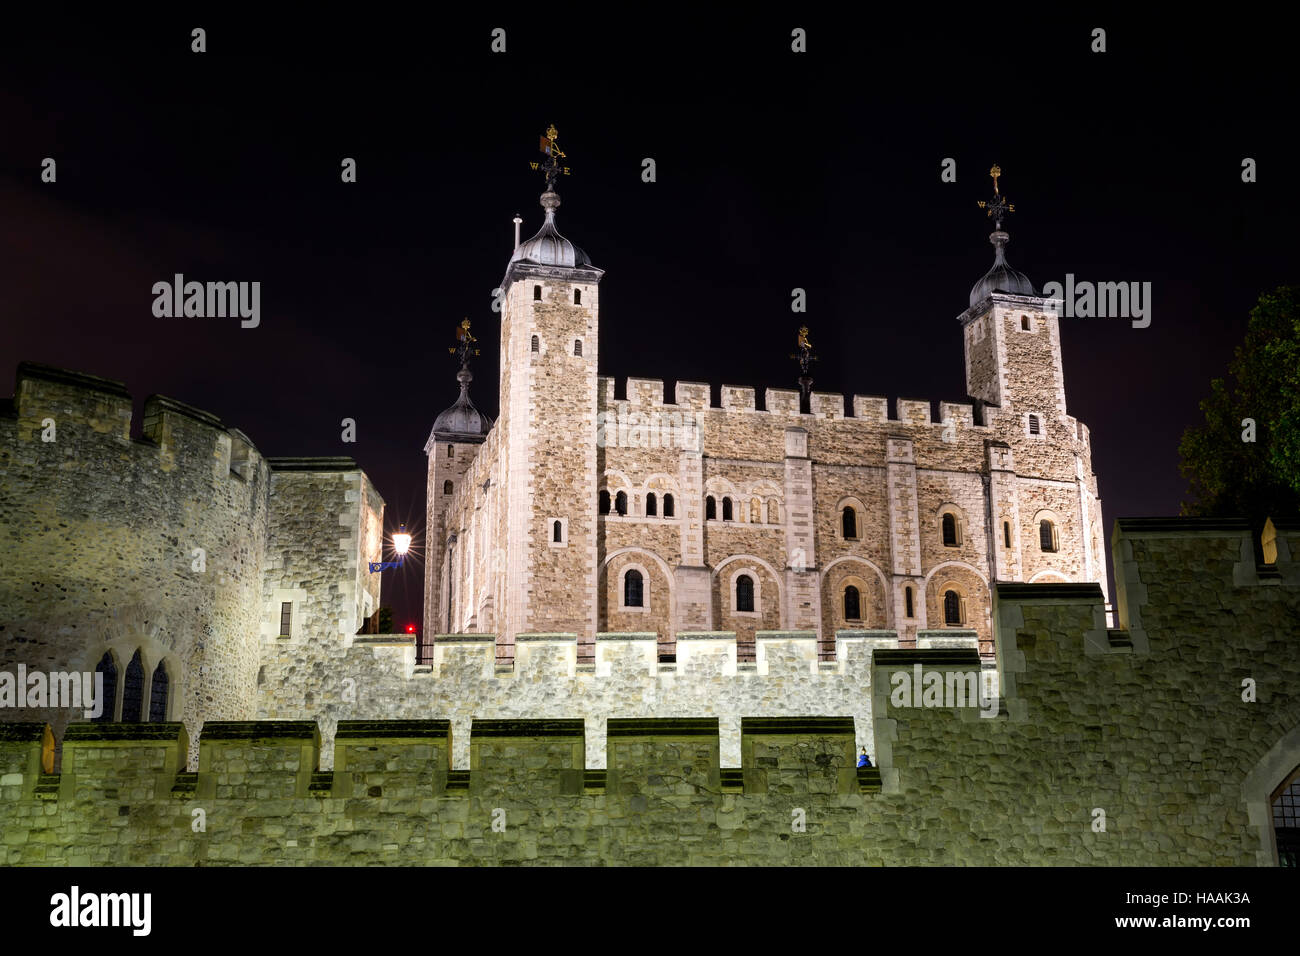 Tower von London - Teil des Historic Royal Palaces, Gehäuse die Kronjuwelen in der Nacht gezeigt. London, England, Vereinigtes Königreich Stockfoto